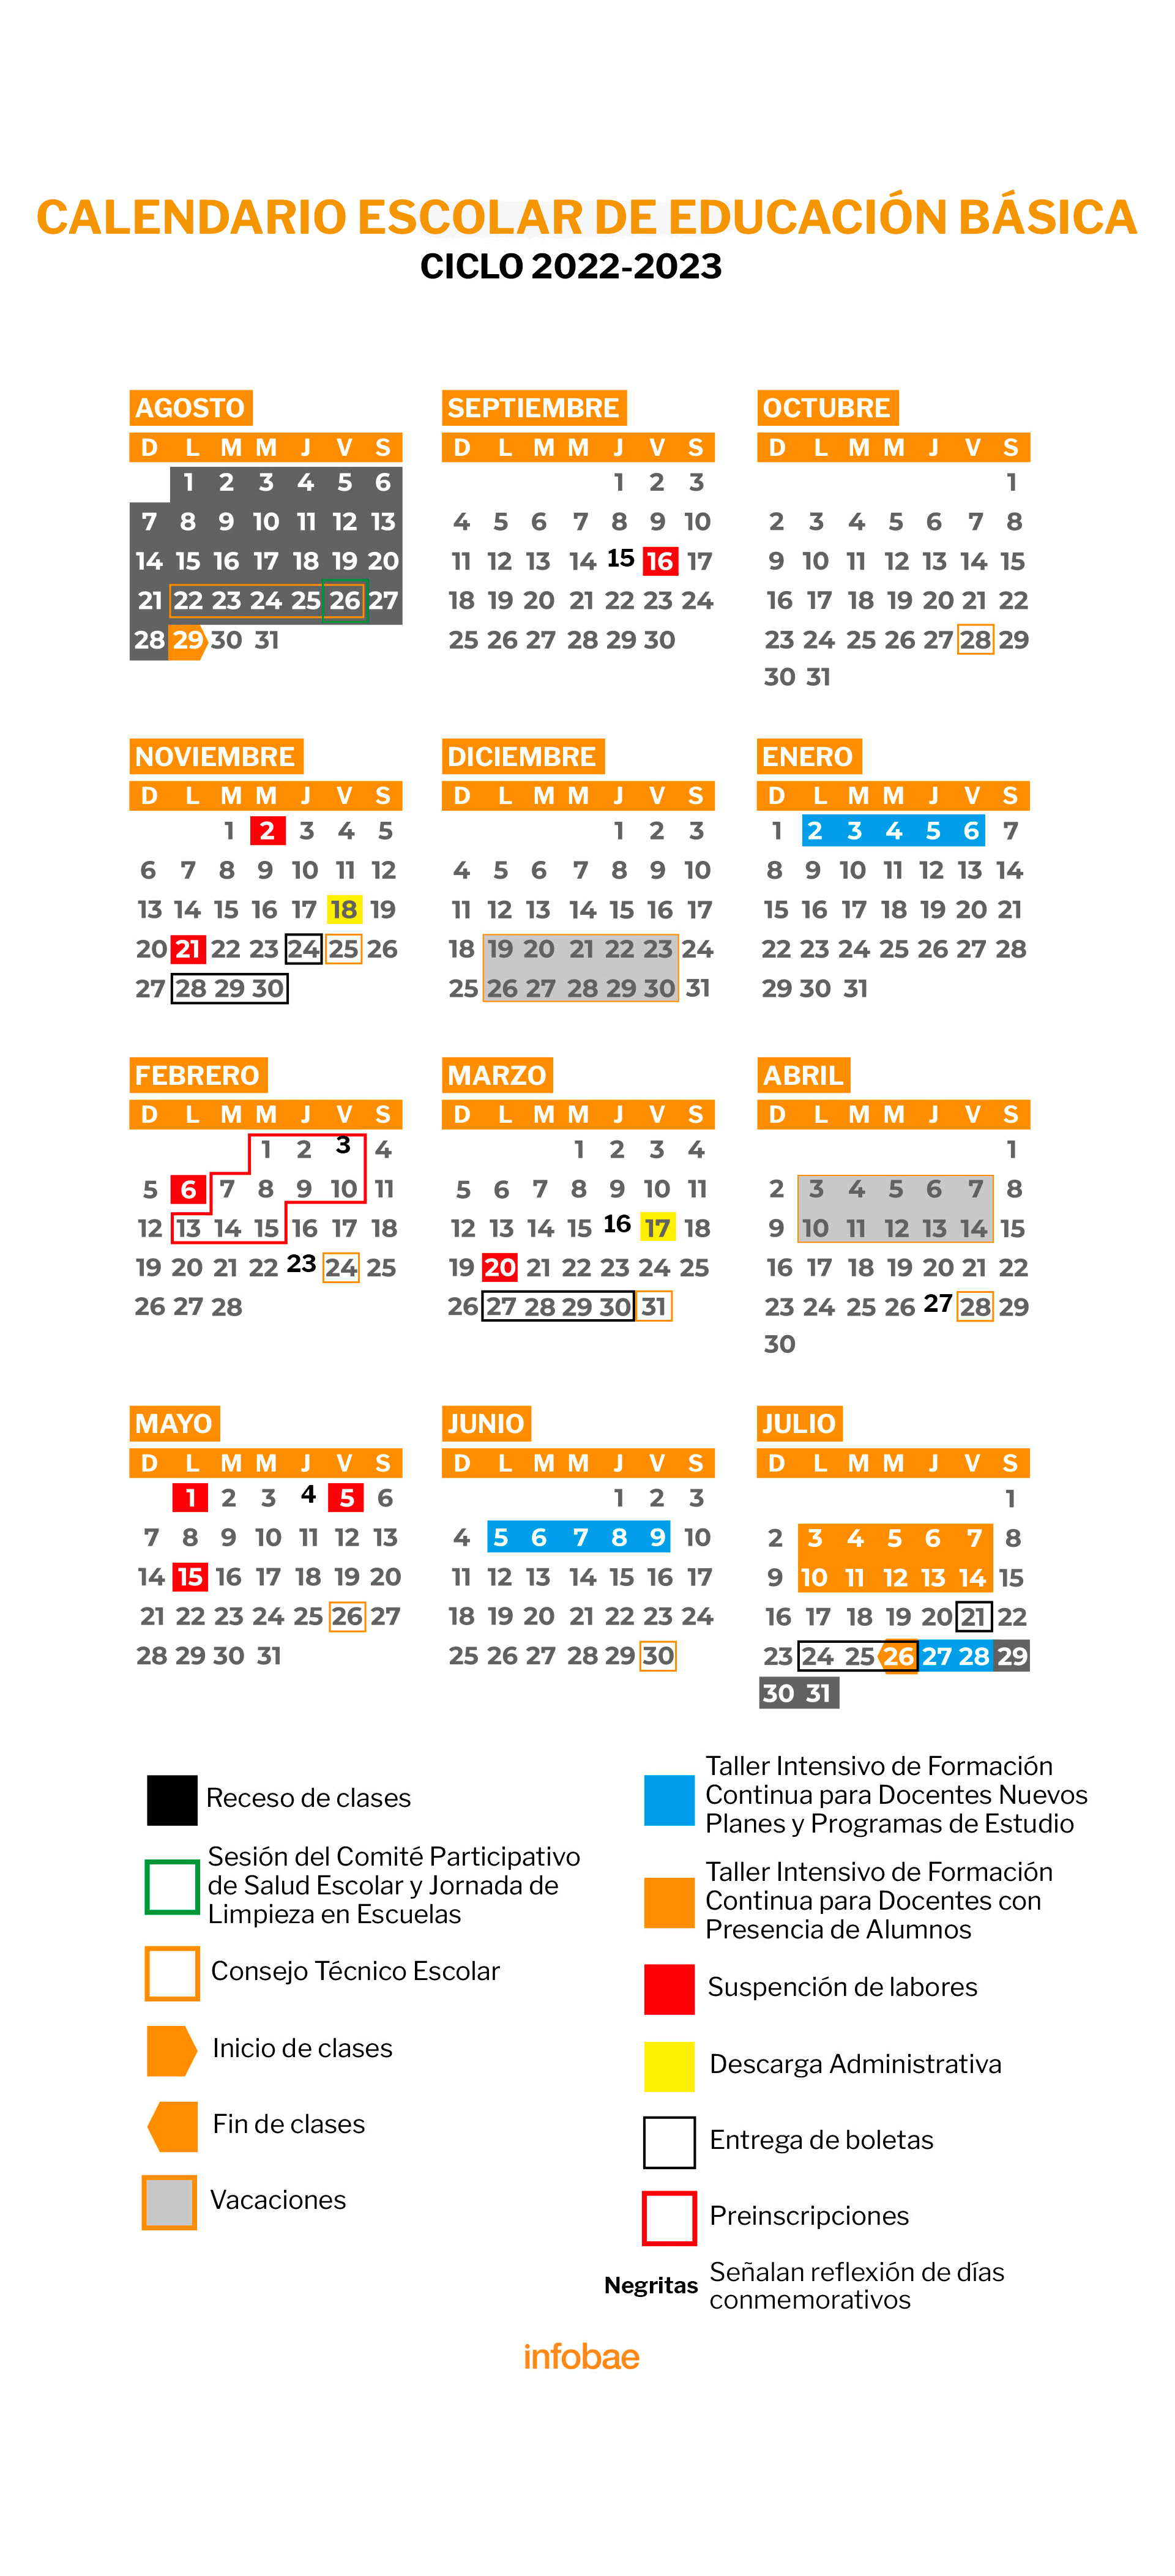 Este es el calendario oficial de la SEP del ciclo escolar 2022-2023. (Infobae)